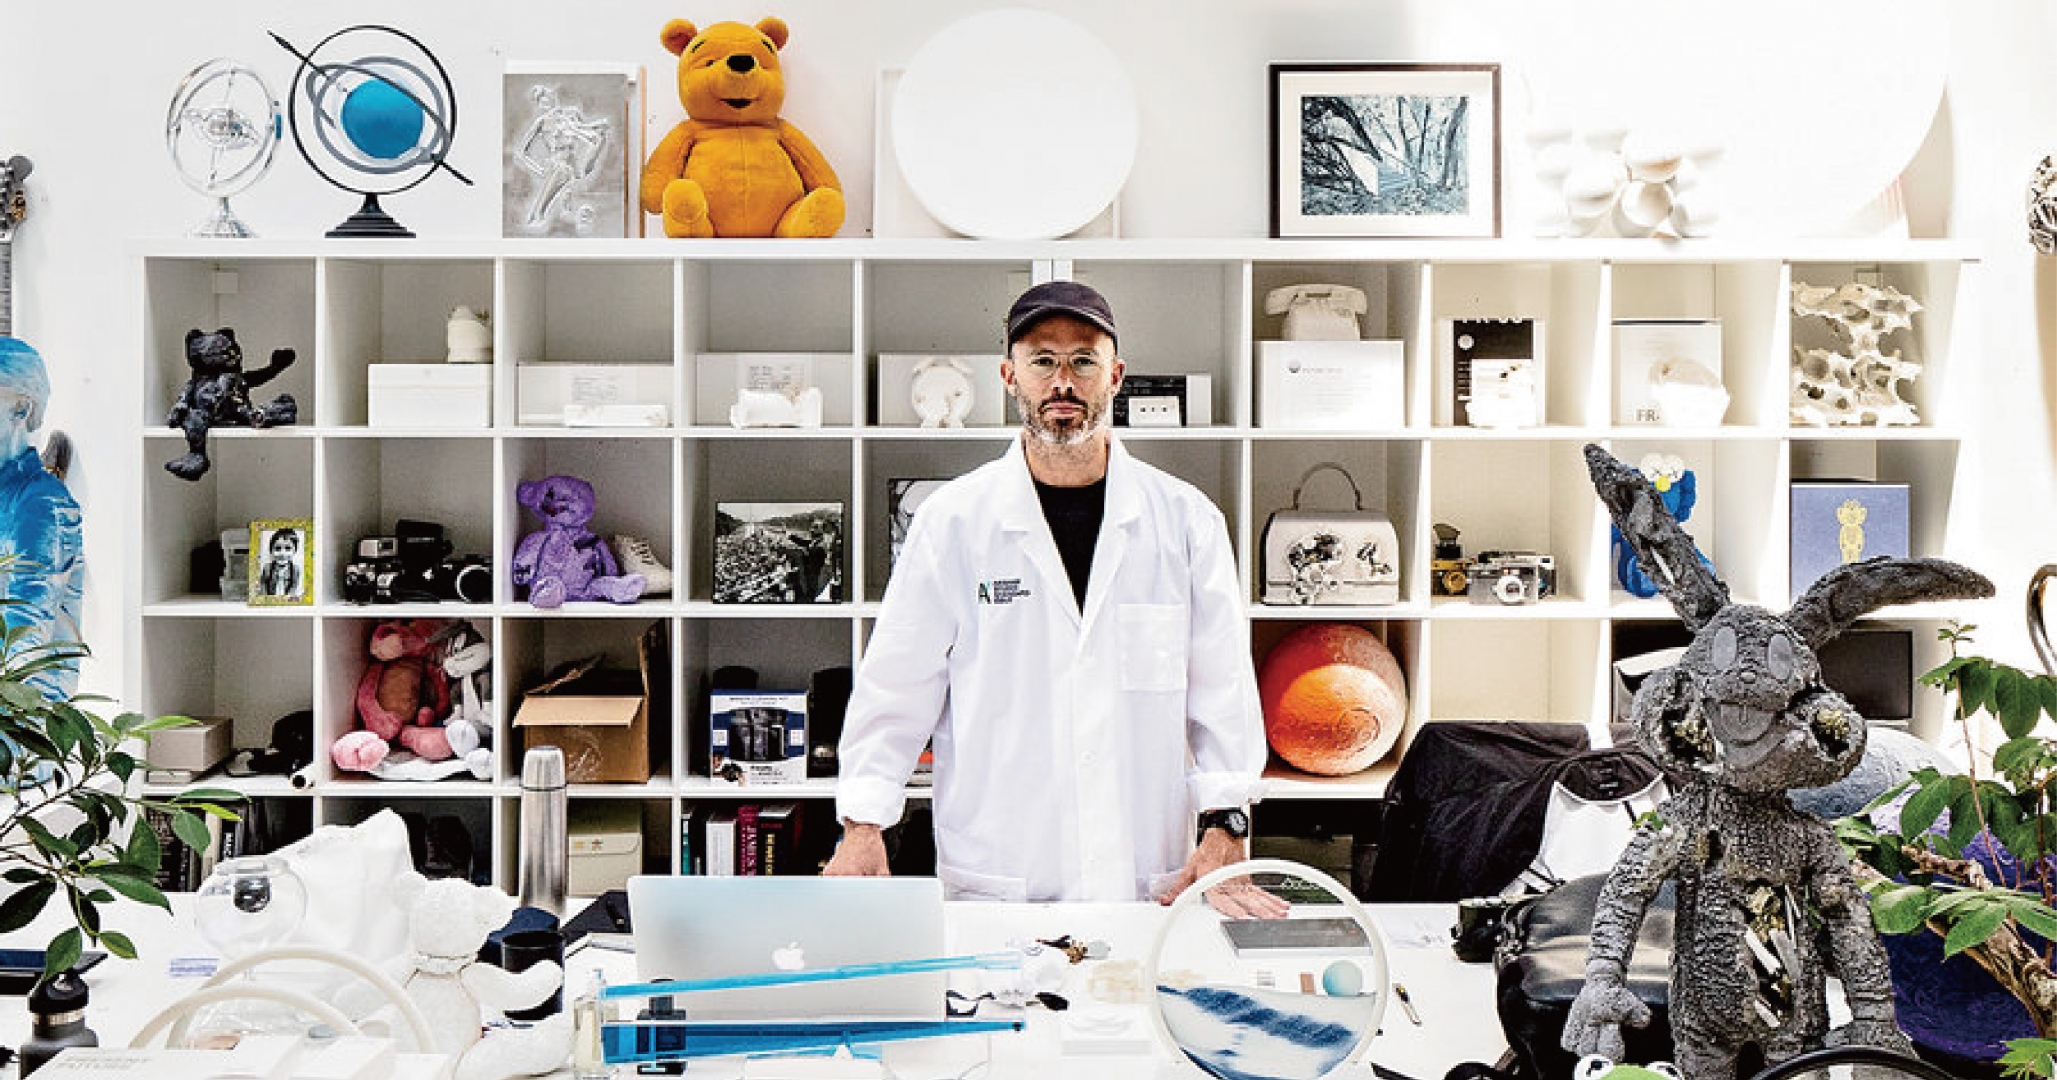 ＃限時競標：想要參觀藝術家 Daniel Arsham 的工作室嗎？你的機會來了！